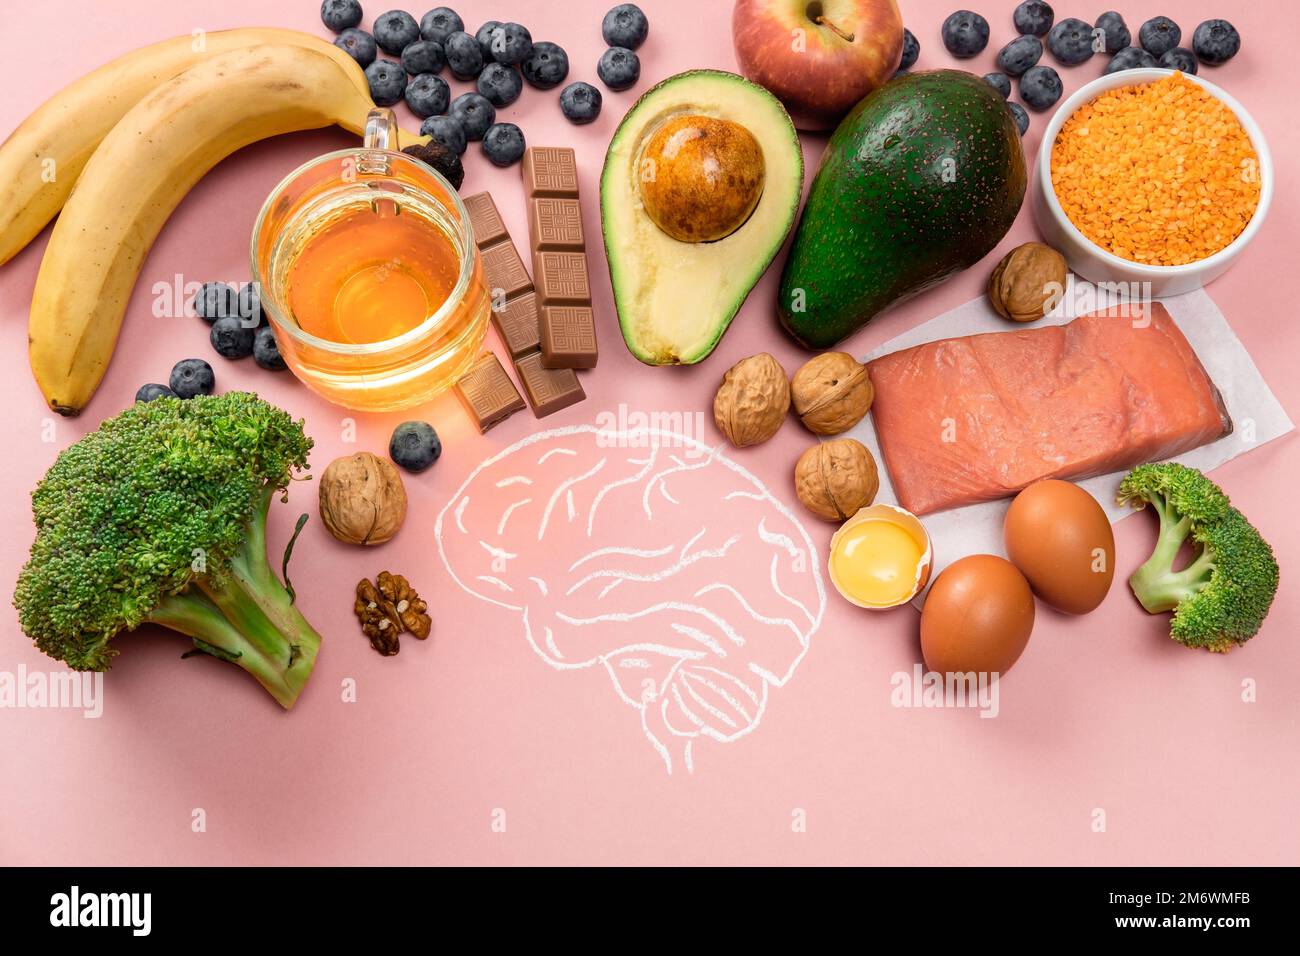 Die besten Lebensmittel für Gehirn und Gedächtnis auf pinkfarbenem Hintergrund. Nahrung für Geist und Energie. Gesunder Lebensstil. Speicherplatz kopieren. Draufsicht Stockfoto